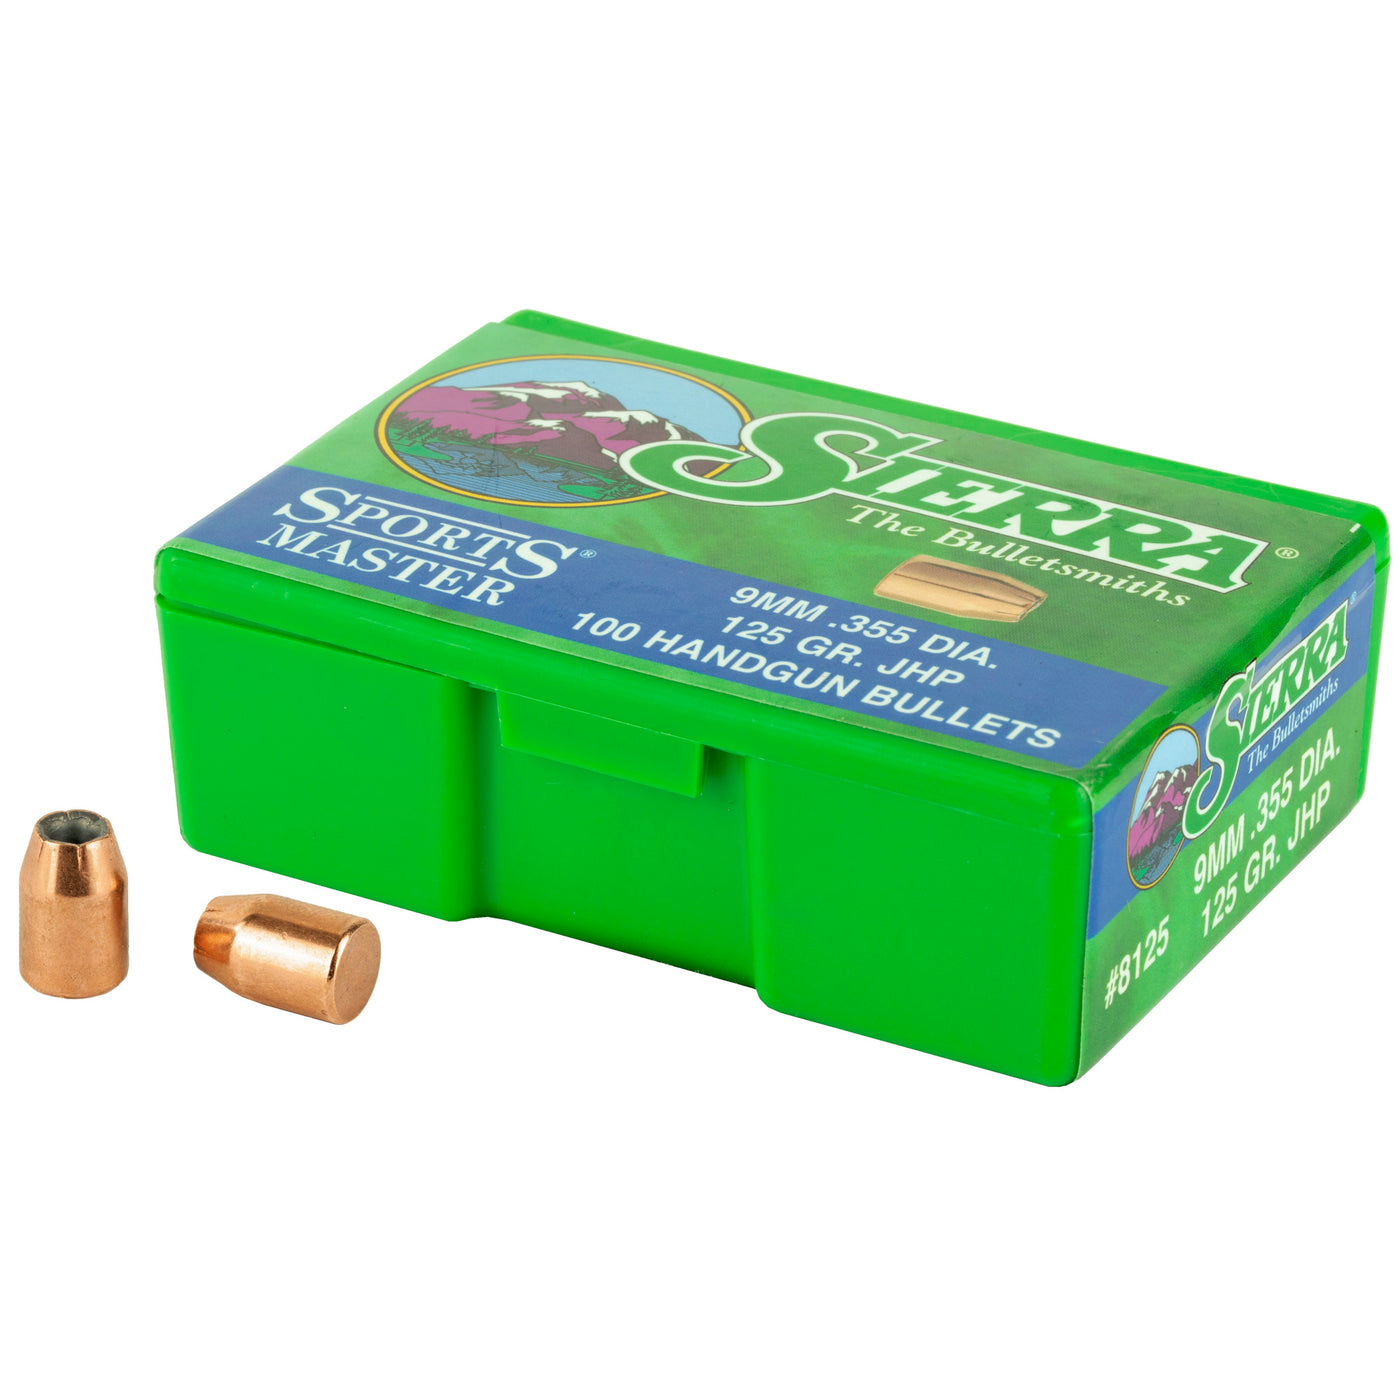 Sierra Bullets 9mm .355 - 125gr Jhp 100ct